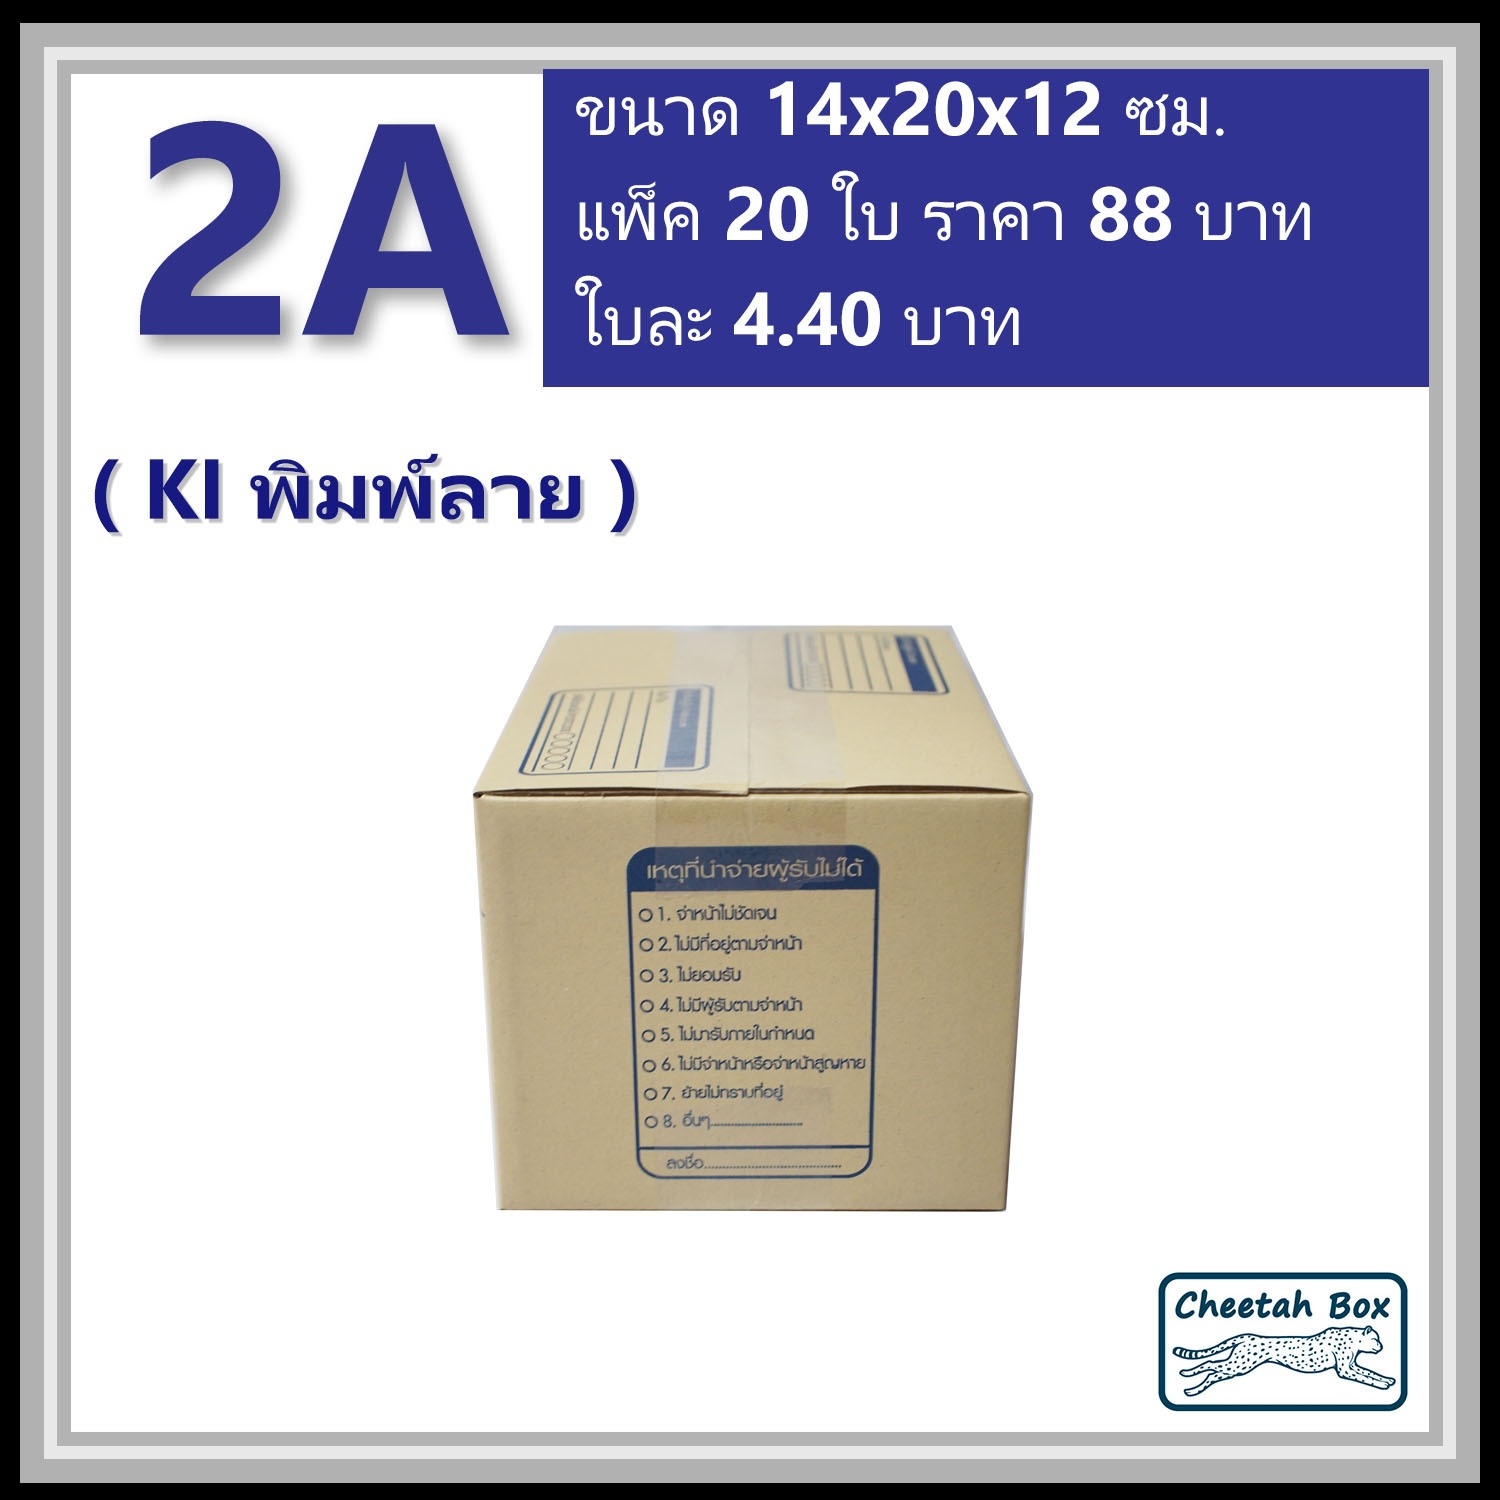 กล่องไปรษณีย์ 2A (Cheetah Box ขนาด 14*20*12 CM)